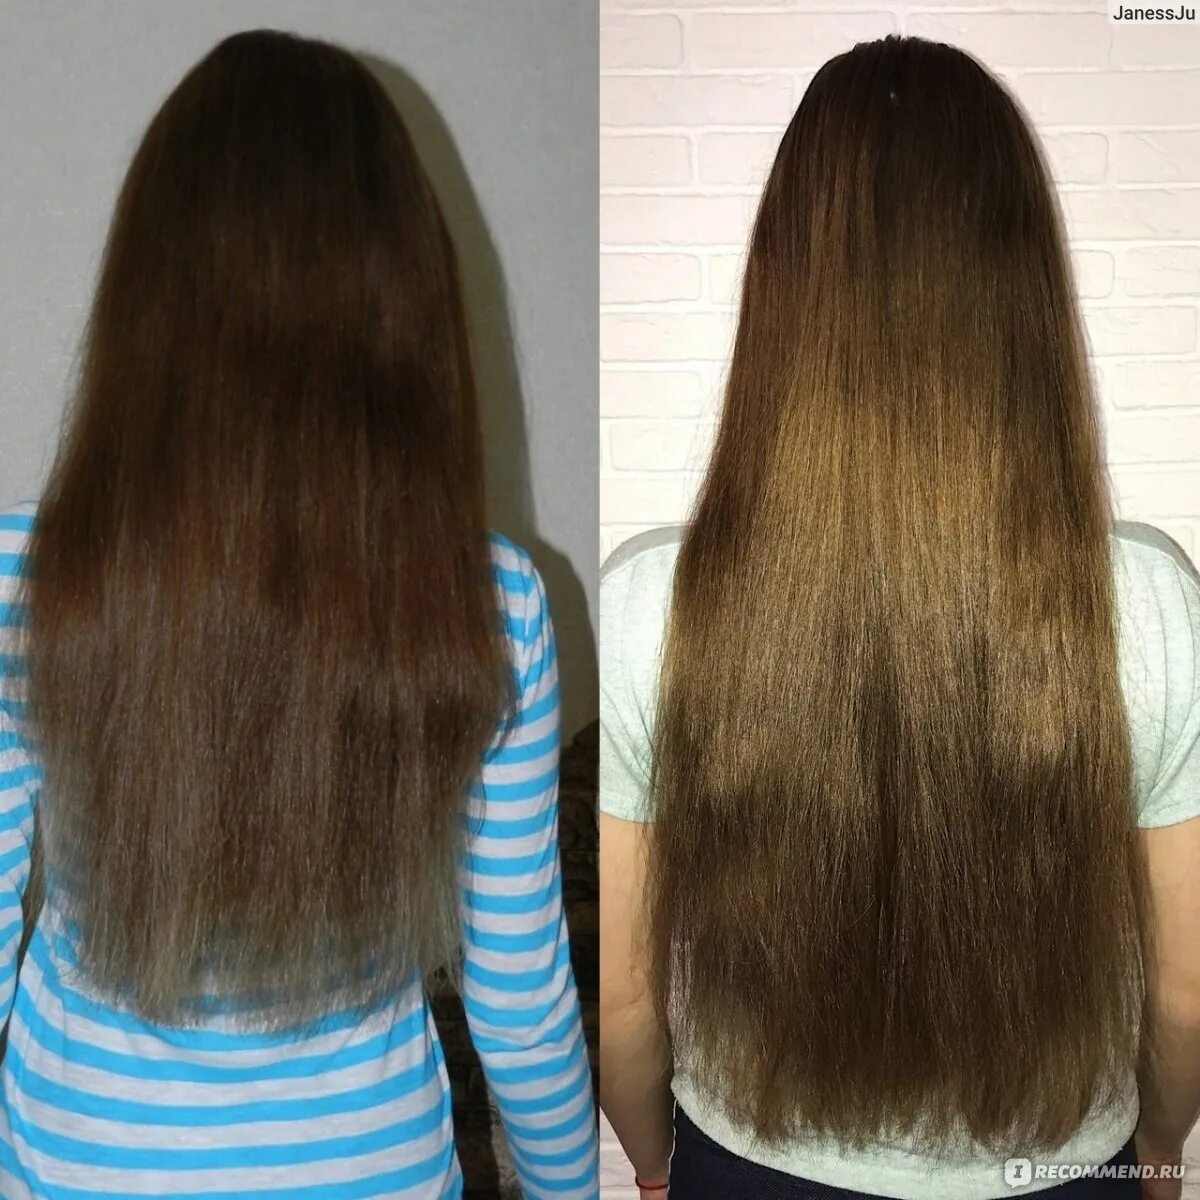 Волосы до после. Отращивание волос. Волосы отрасли до после. Отращивание волос до и после.